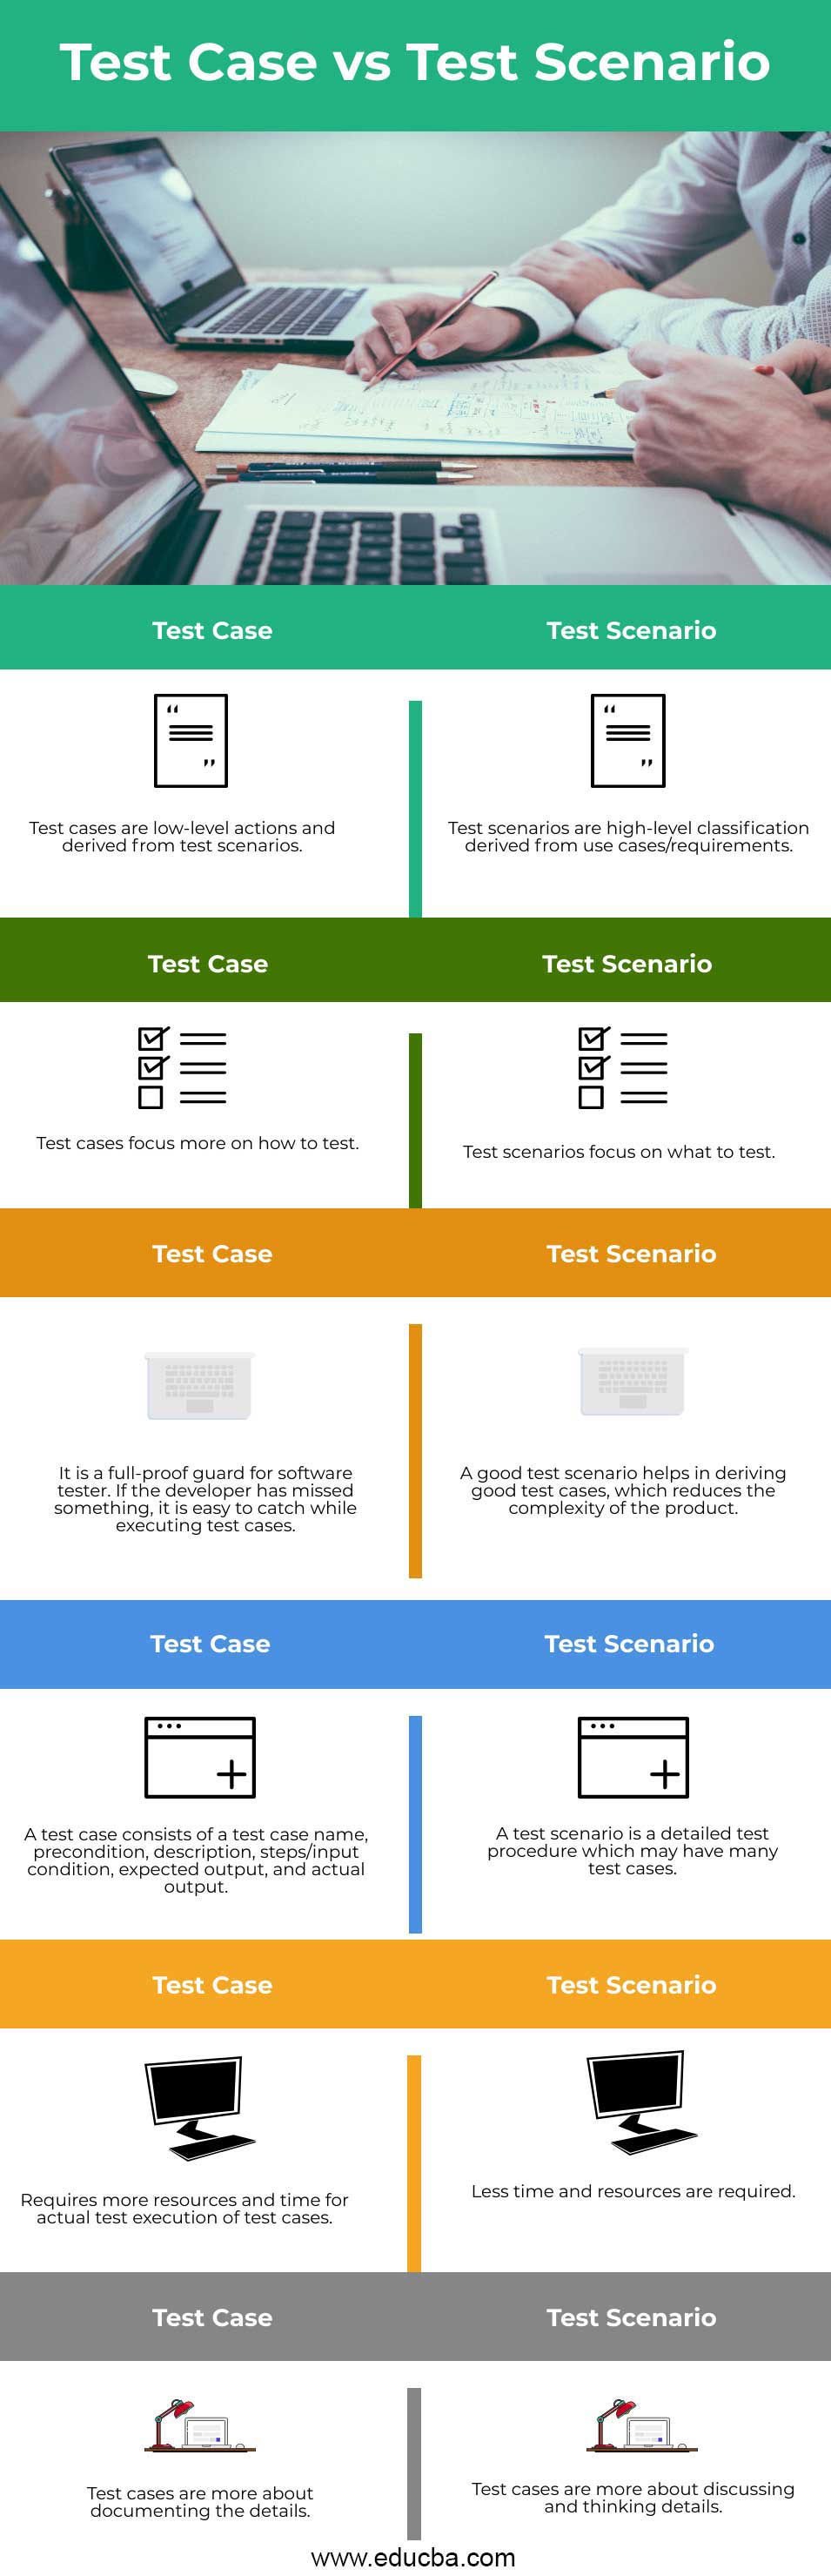 Test Case vs Test Scenario info